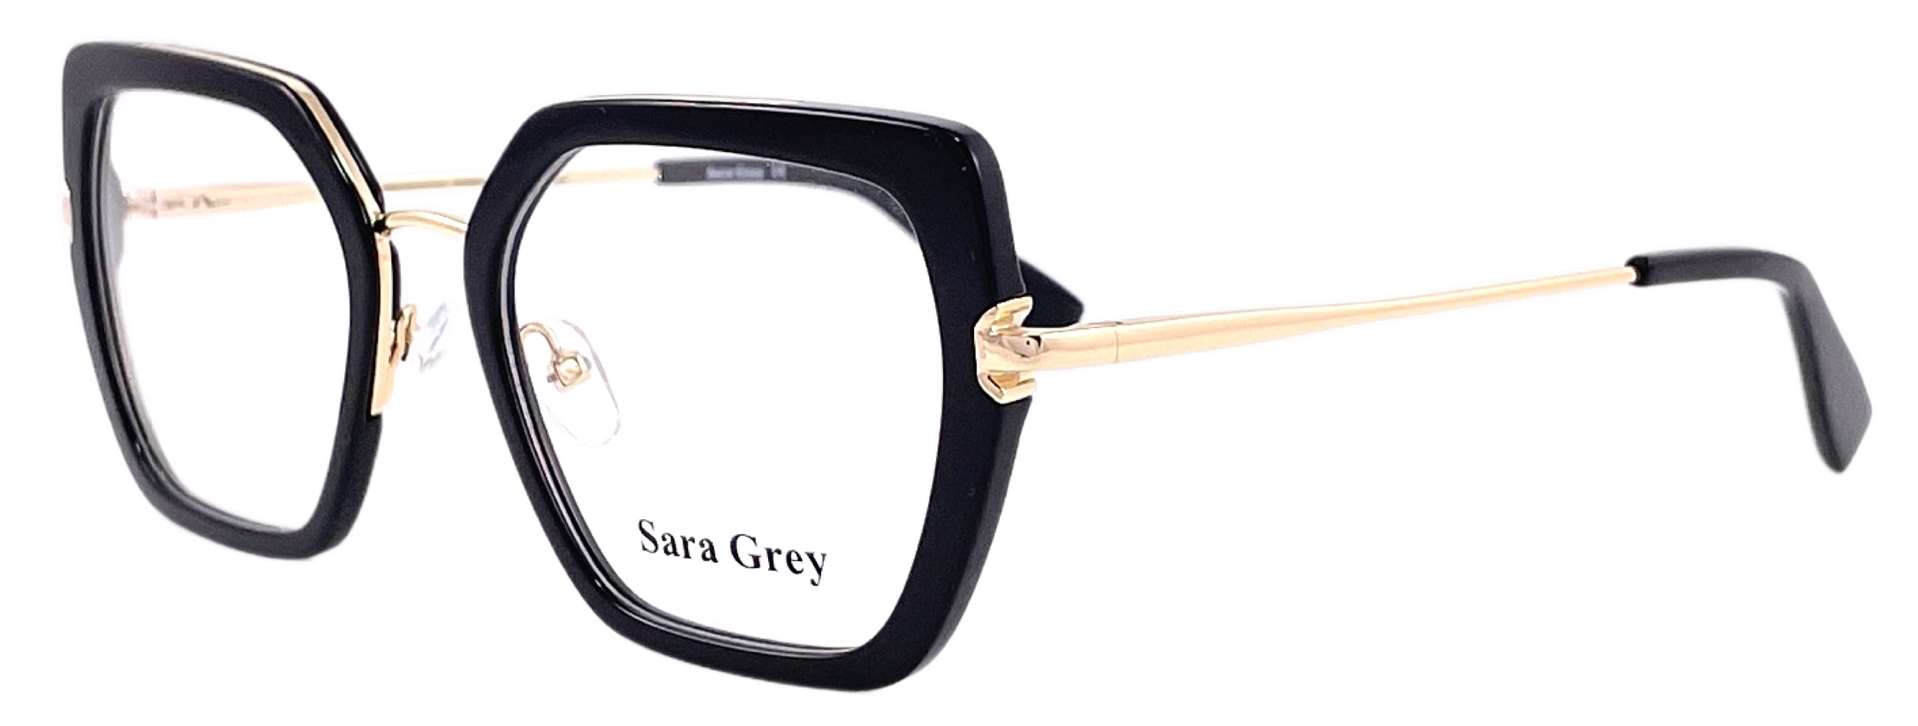 Sara Grey 1662 C01 2